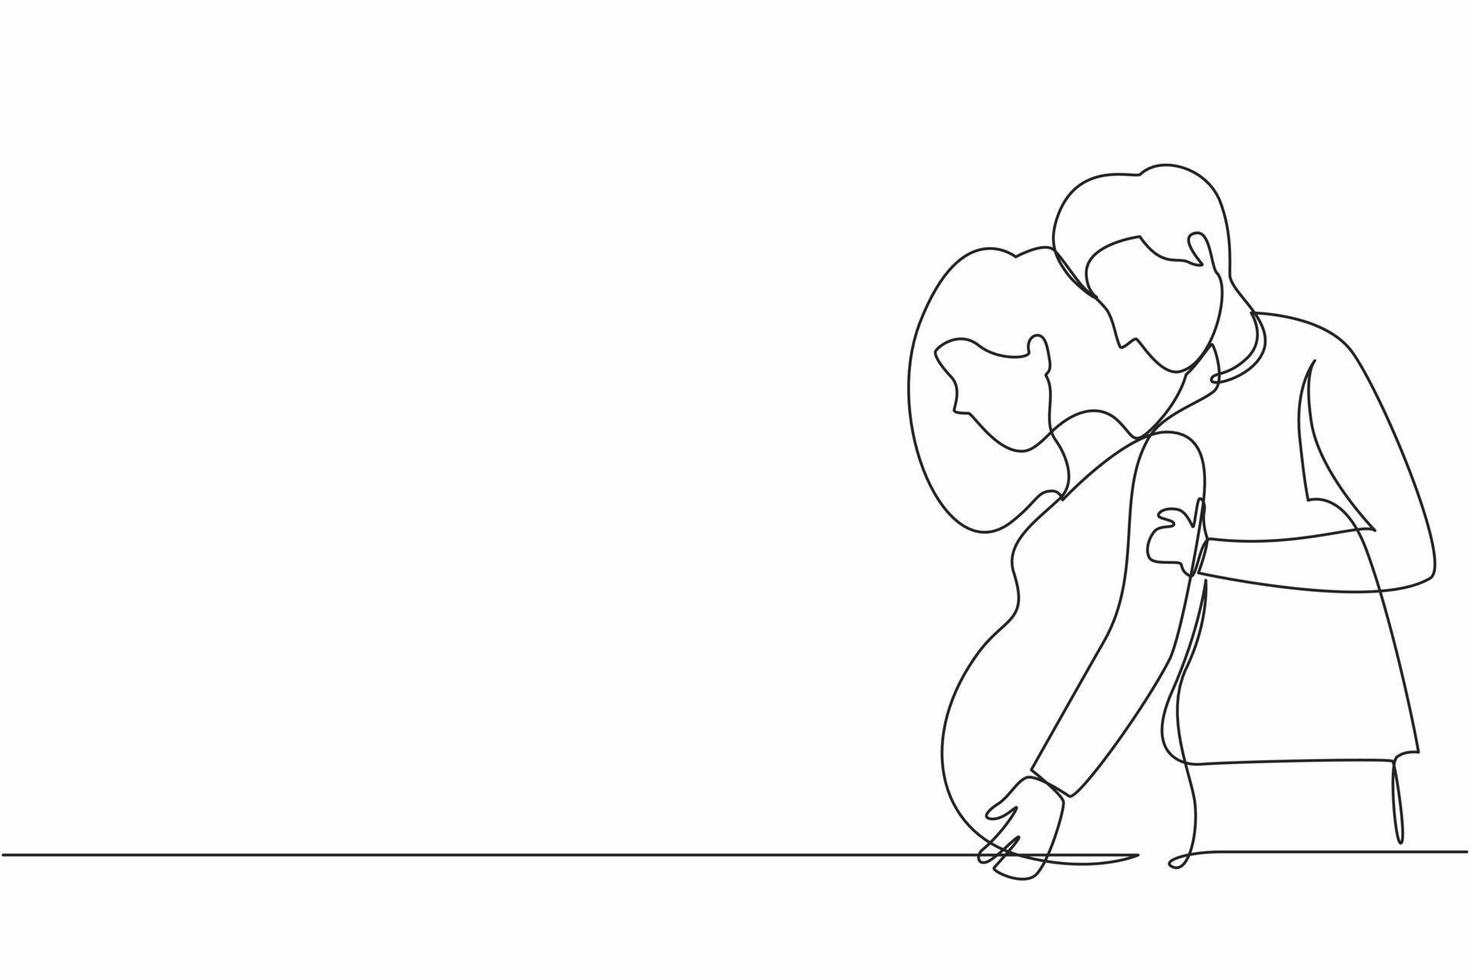 dibujo continuo de una línea el hombre o el marido abrazaron cuidadosamente a la mujer embarazada. marido y mujer esperan bebé, padres jóvenes, apoyo familiar. ilustración gráfica de vector de diseño de dibujo de una sola línea